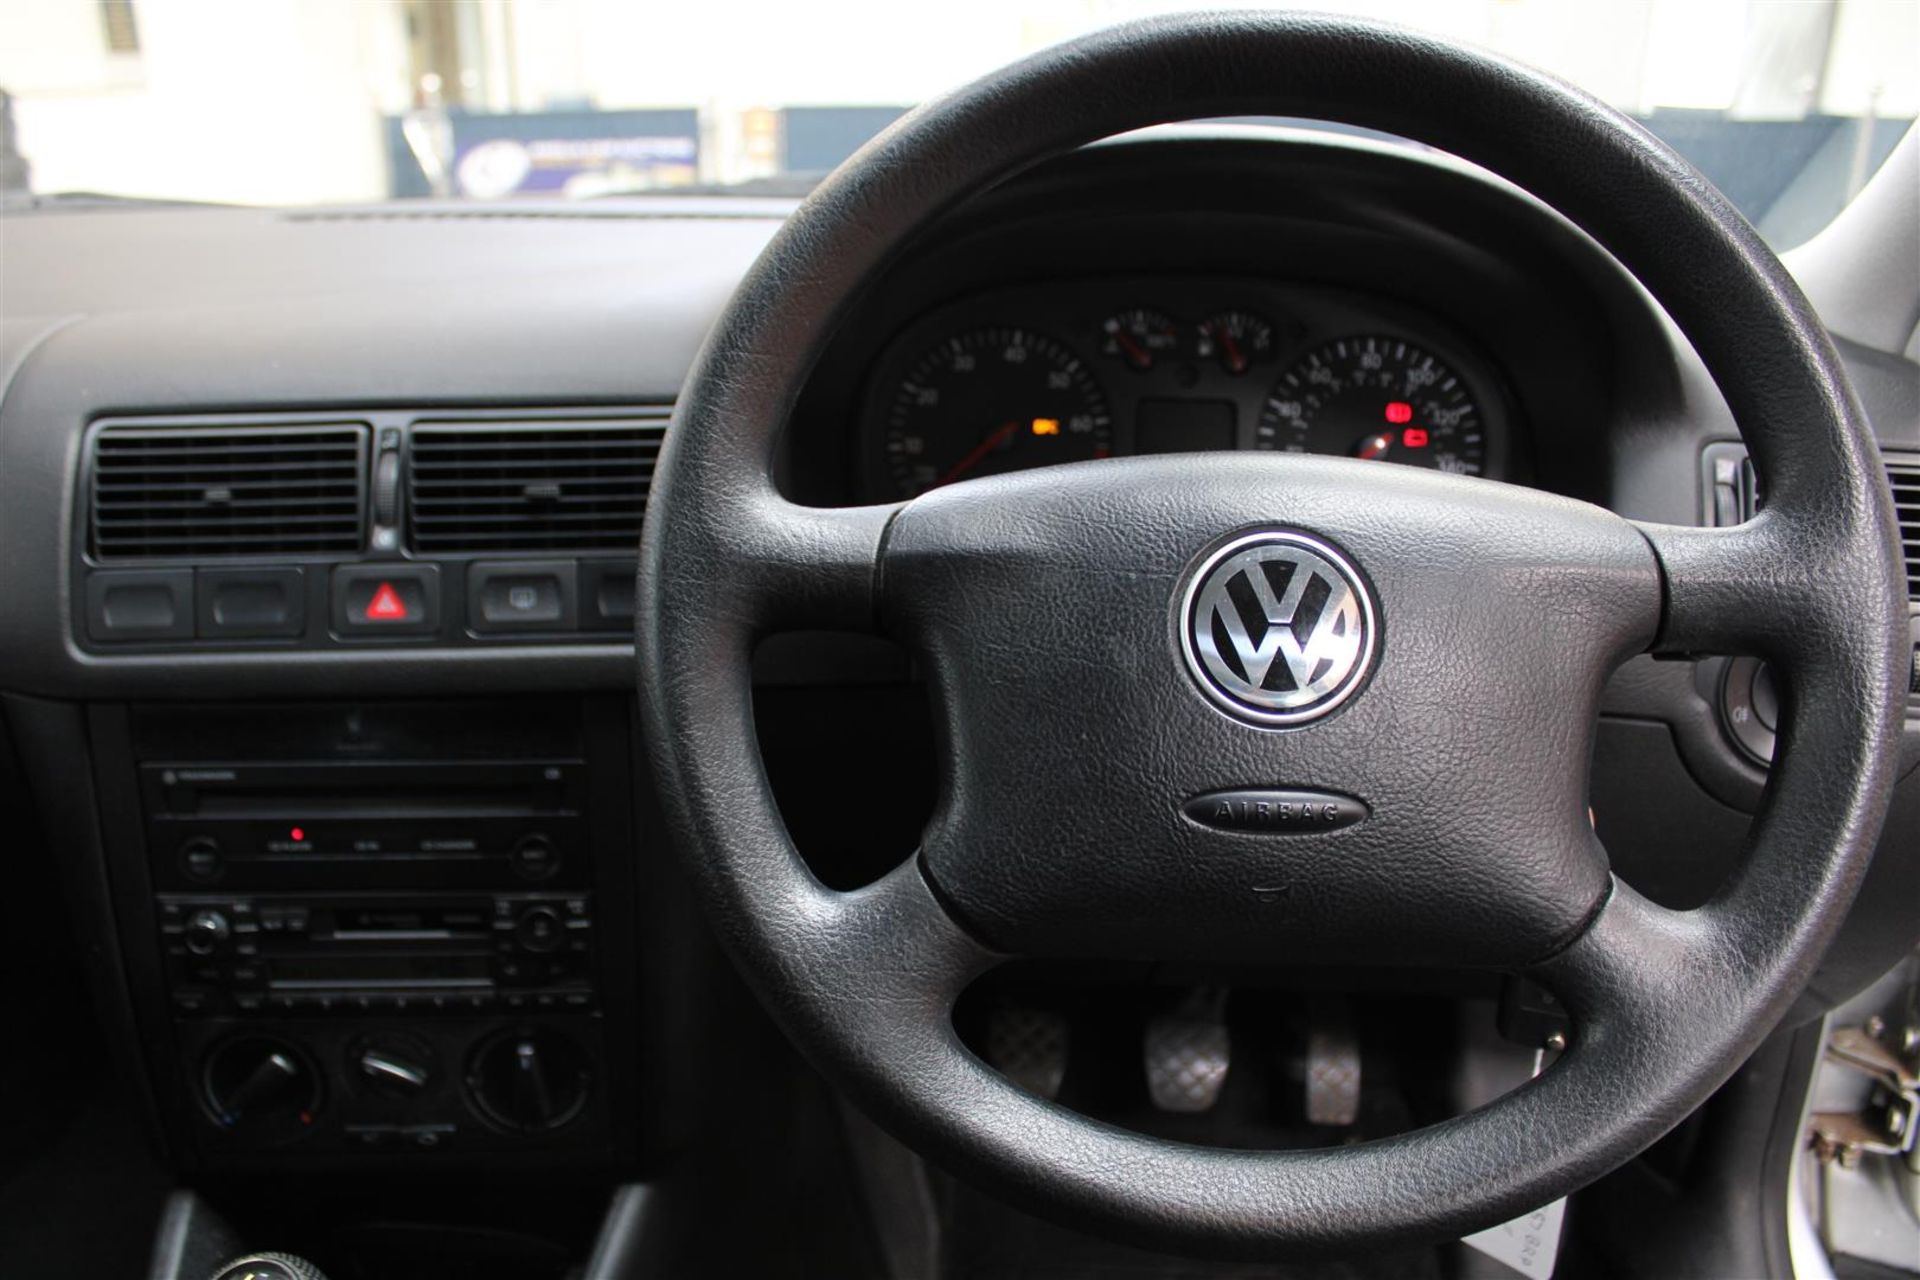 2001 VW Golf SE - Image 16 of 29